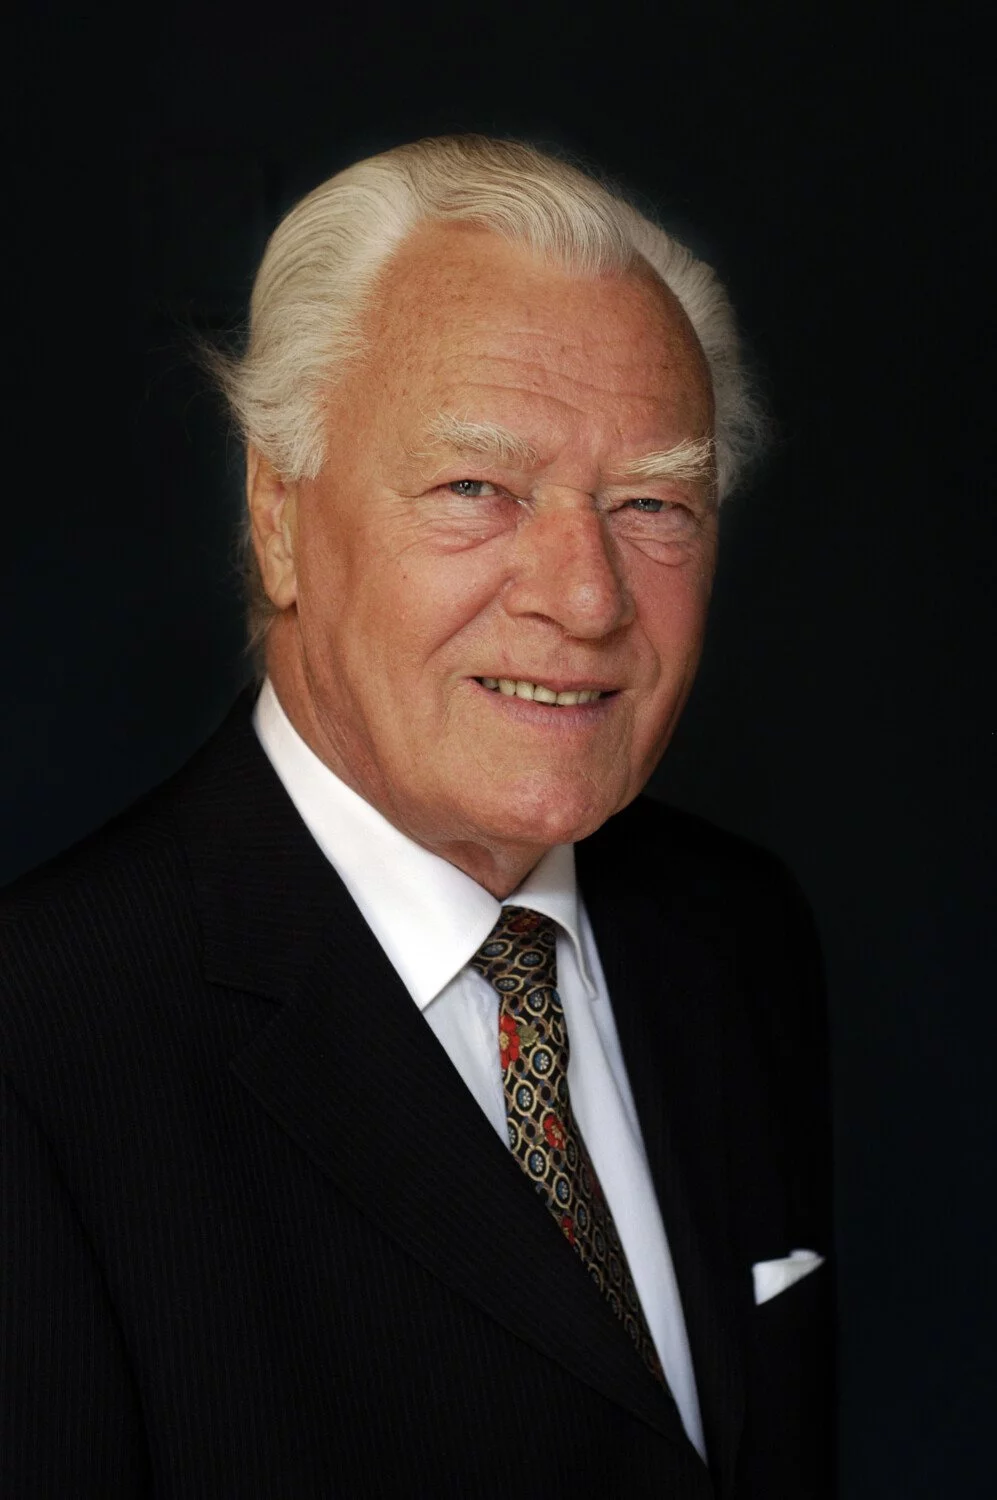 Poul Schluter portrait 2005